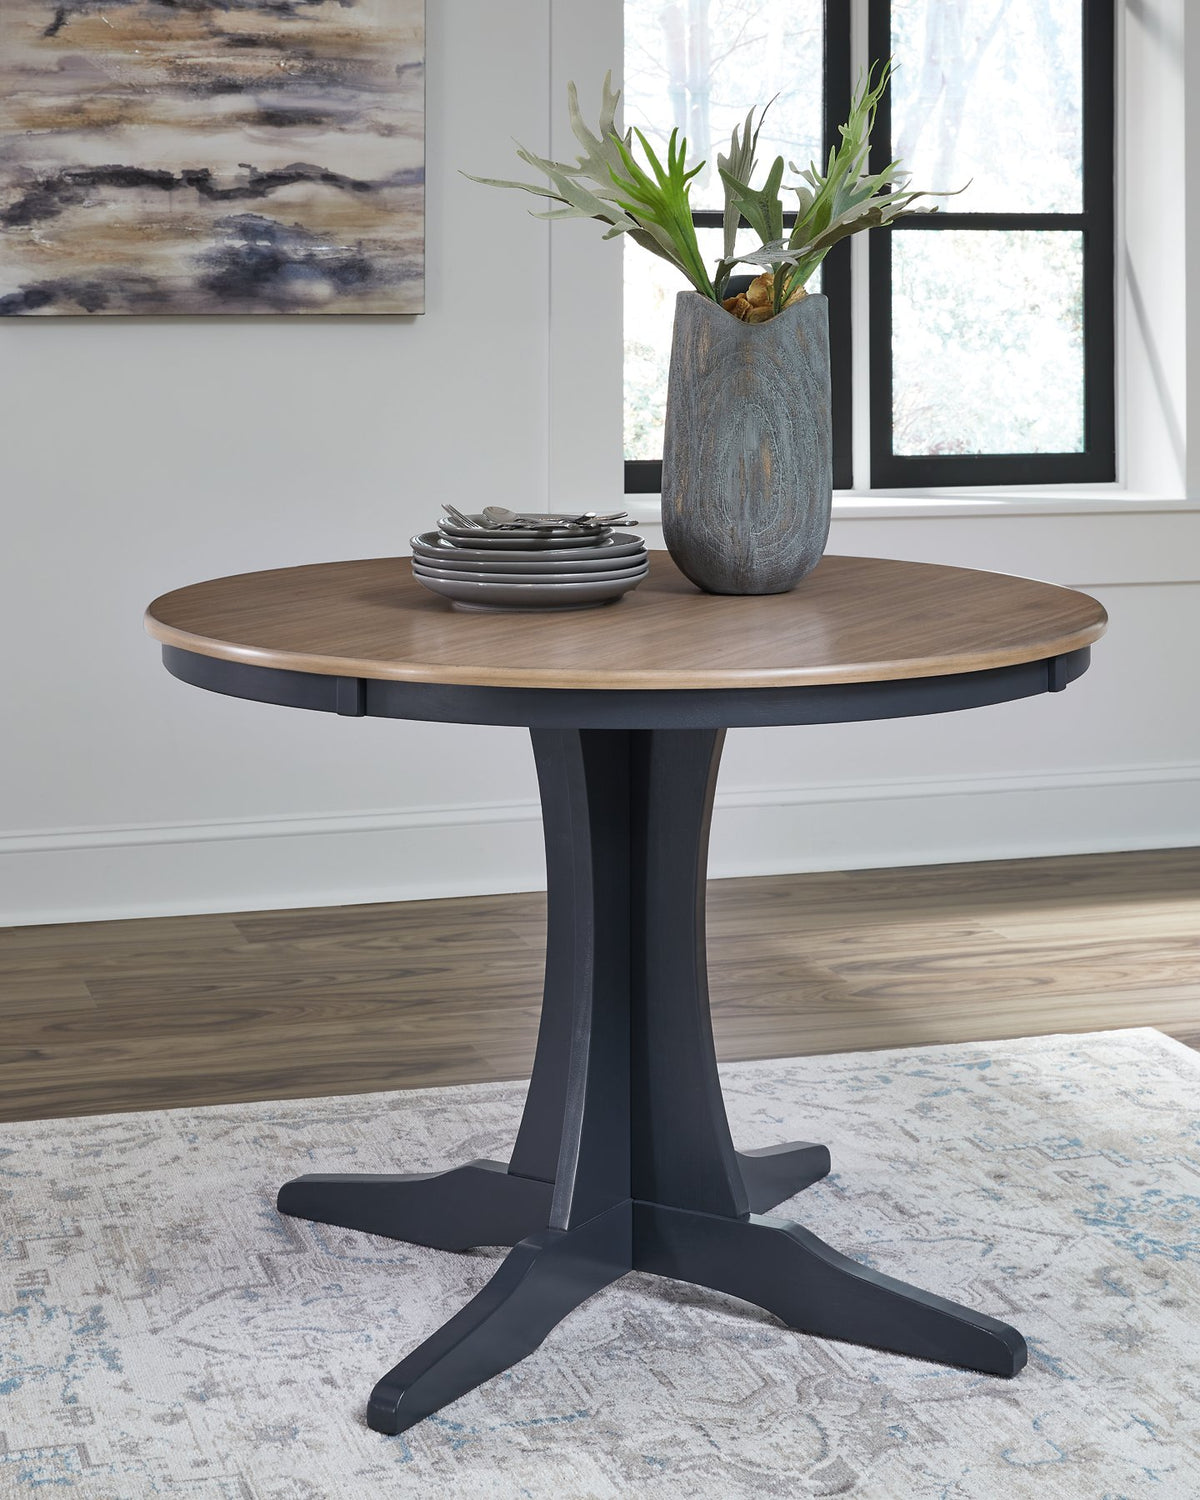 Landocken Dining Table - Half Price Furniture